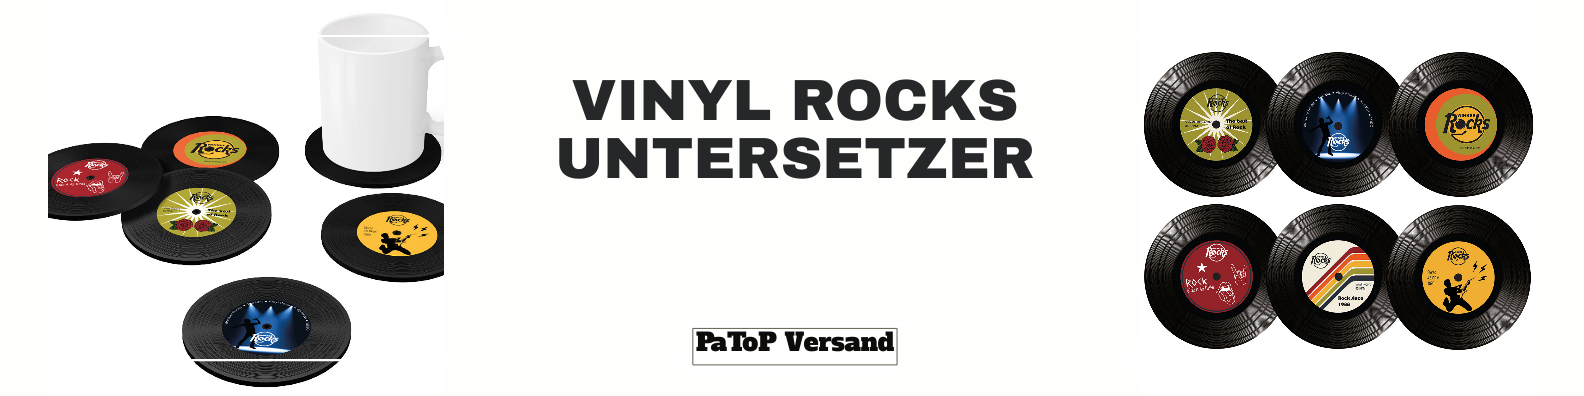 "Style Spritzigkeit: Warum Vinyl Rock Untersetzer Winkee Rocks das Utensil einer trendigen Einrichtung sind".